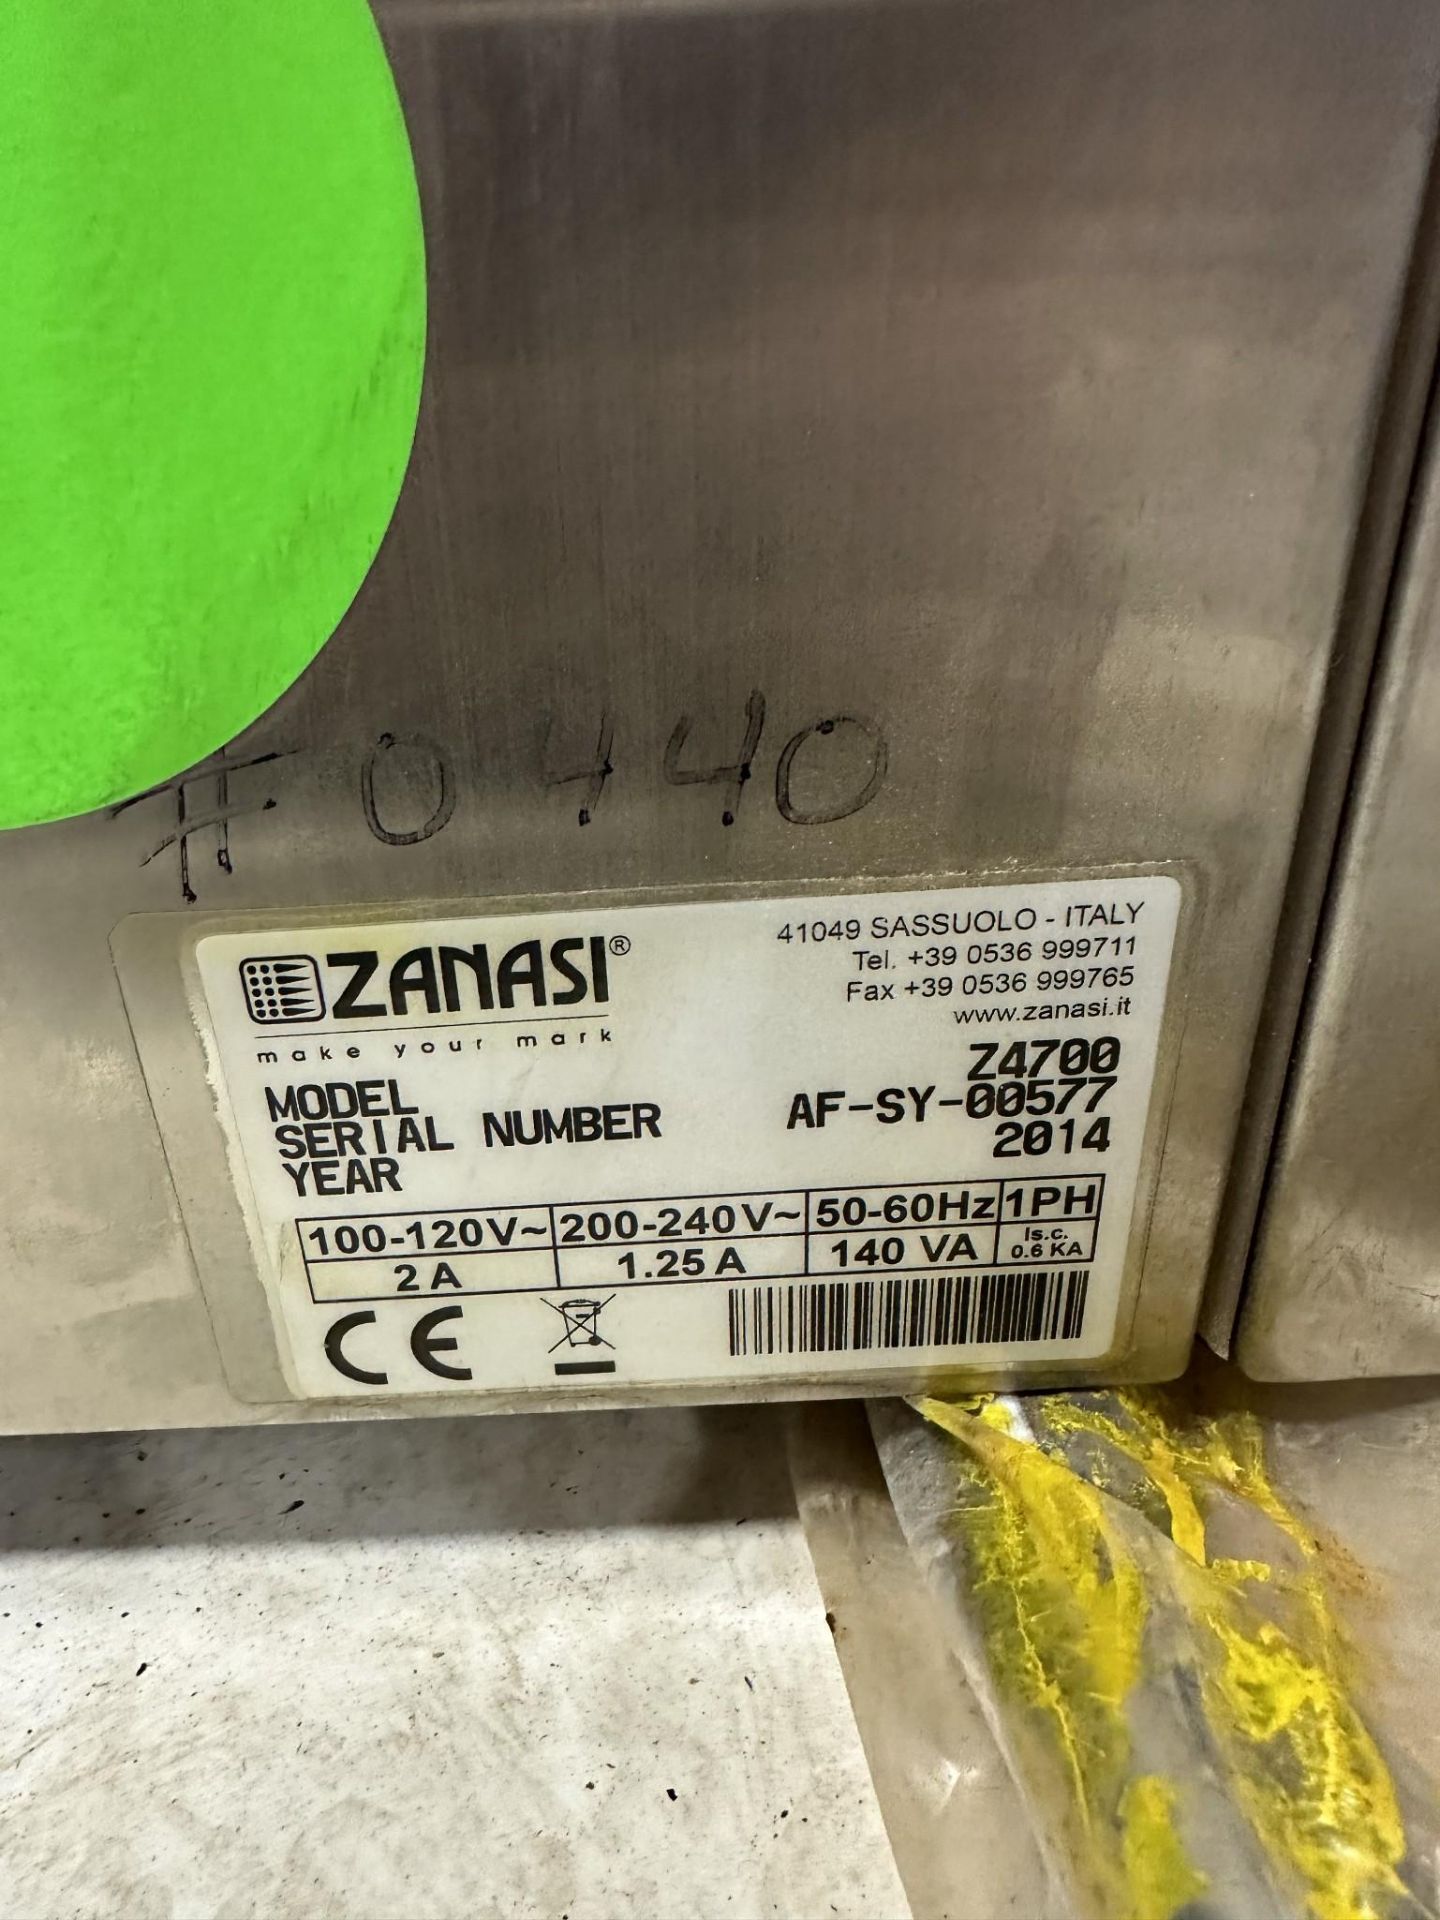 ZANASI Z4700 PRINTER - Image 5 of 5